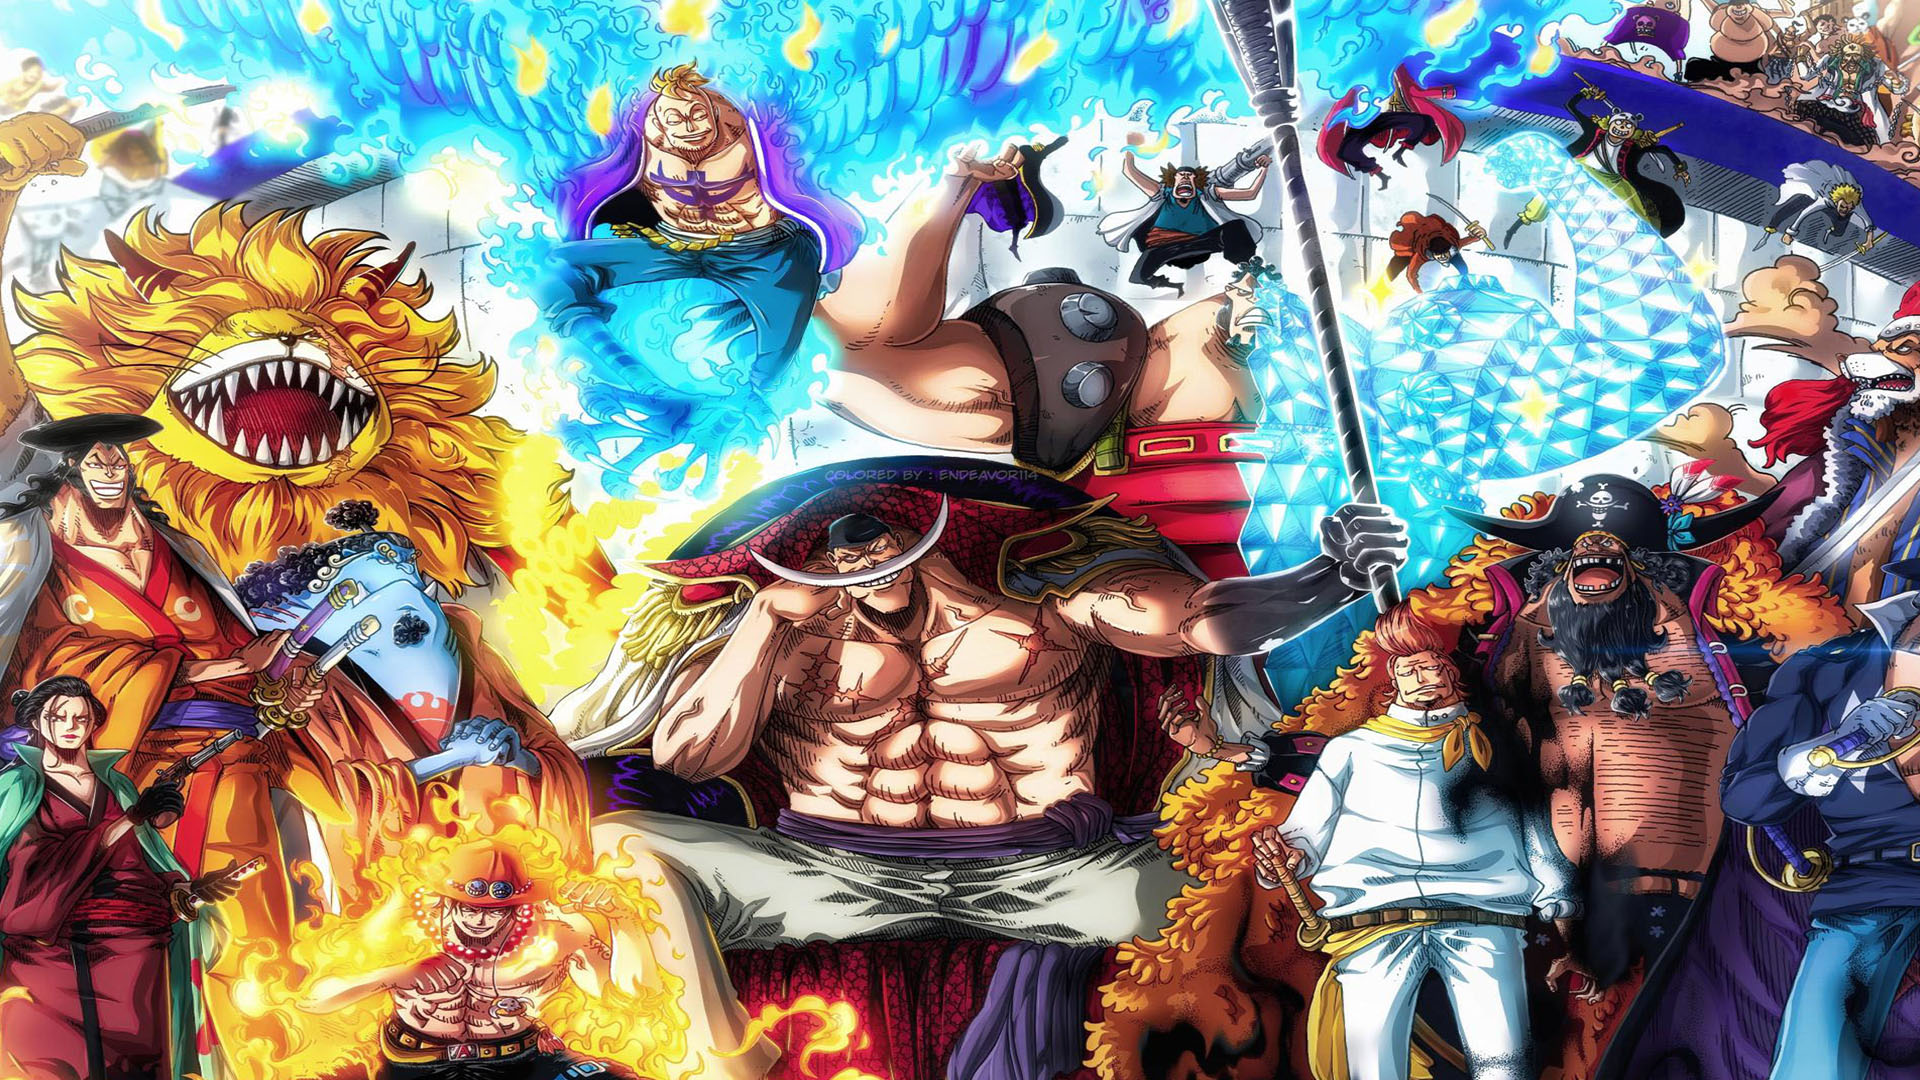 Khám phá bộ sưu tập Hình nền Râu Trắng One Piece đẹp nhất